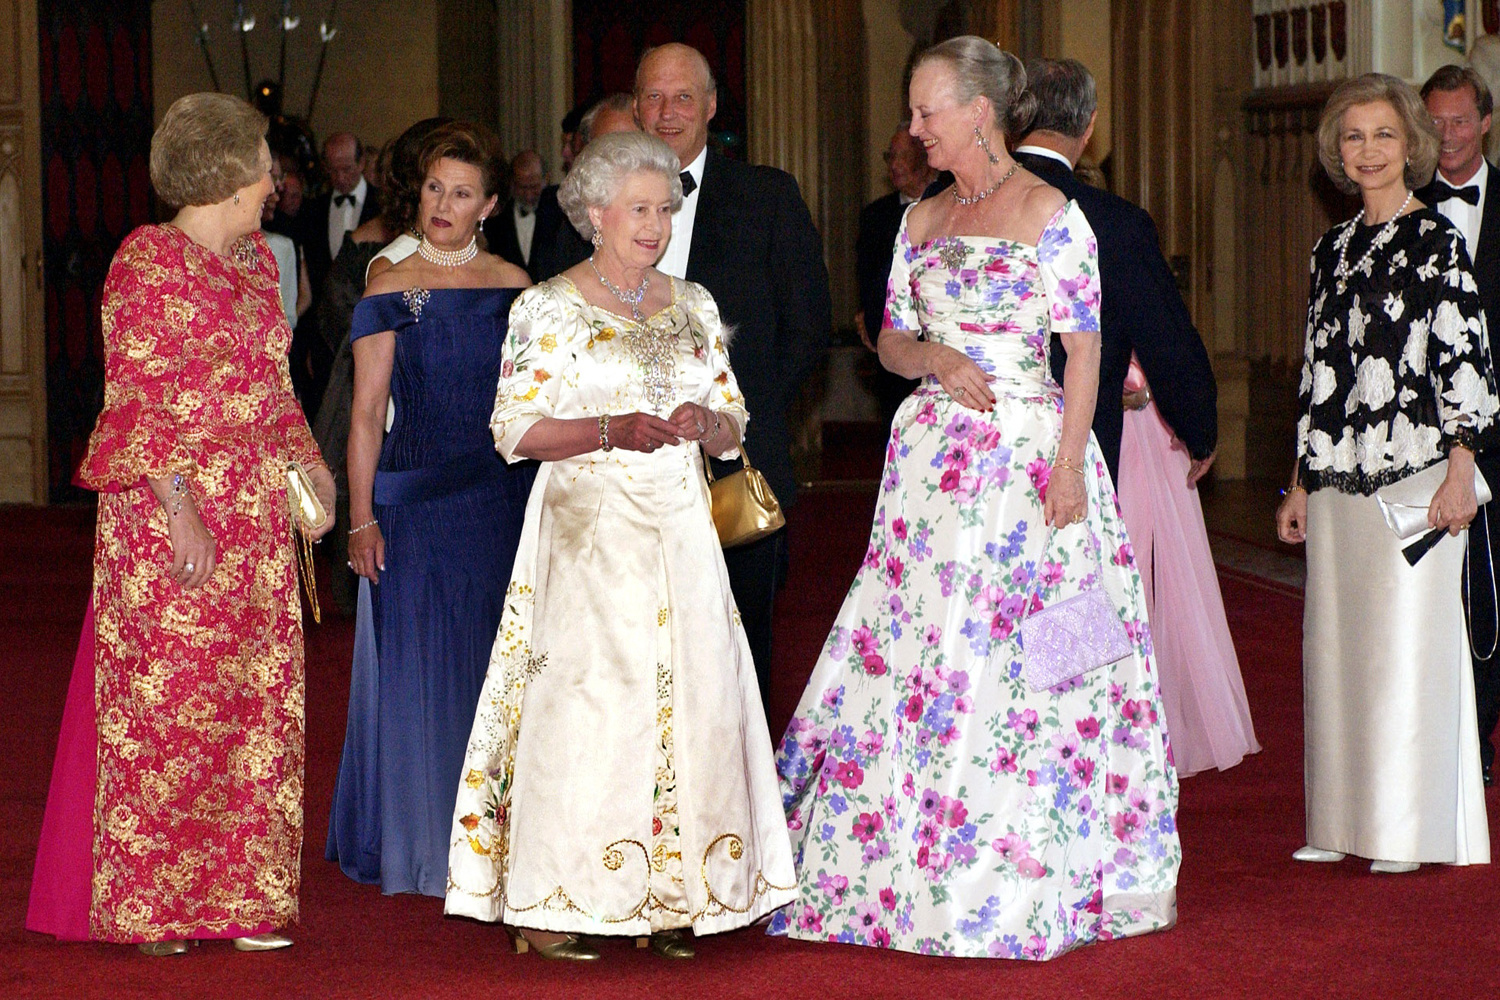 Margrethe II du Danemark en 2002 avec ses homologues, autour de la reine Elizabeth, Belga Images